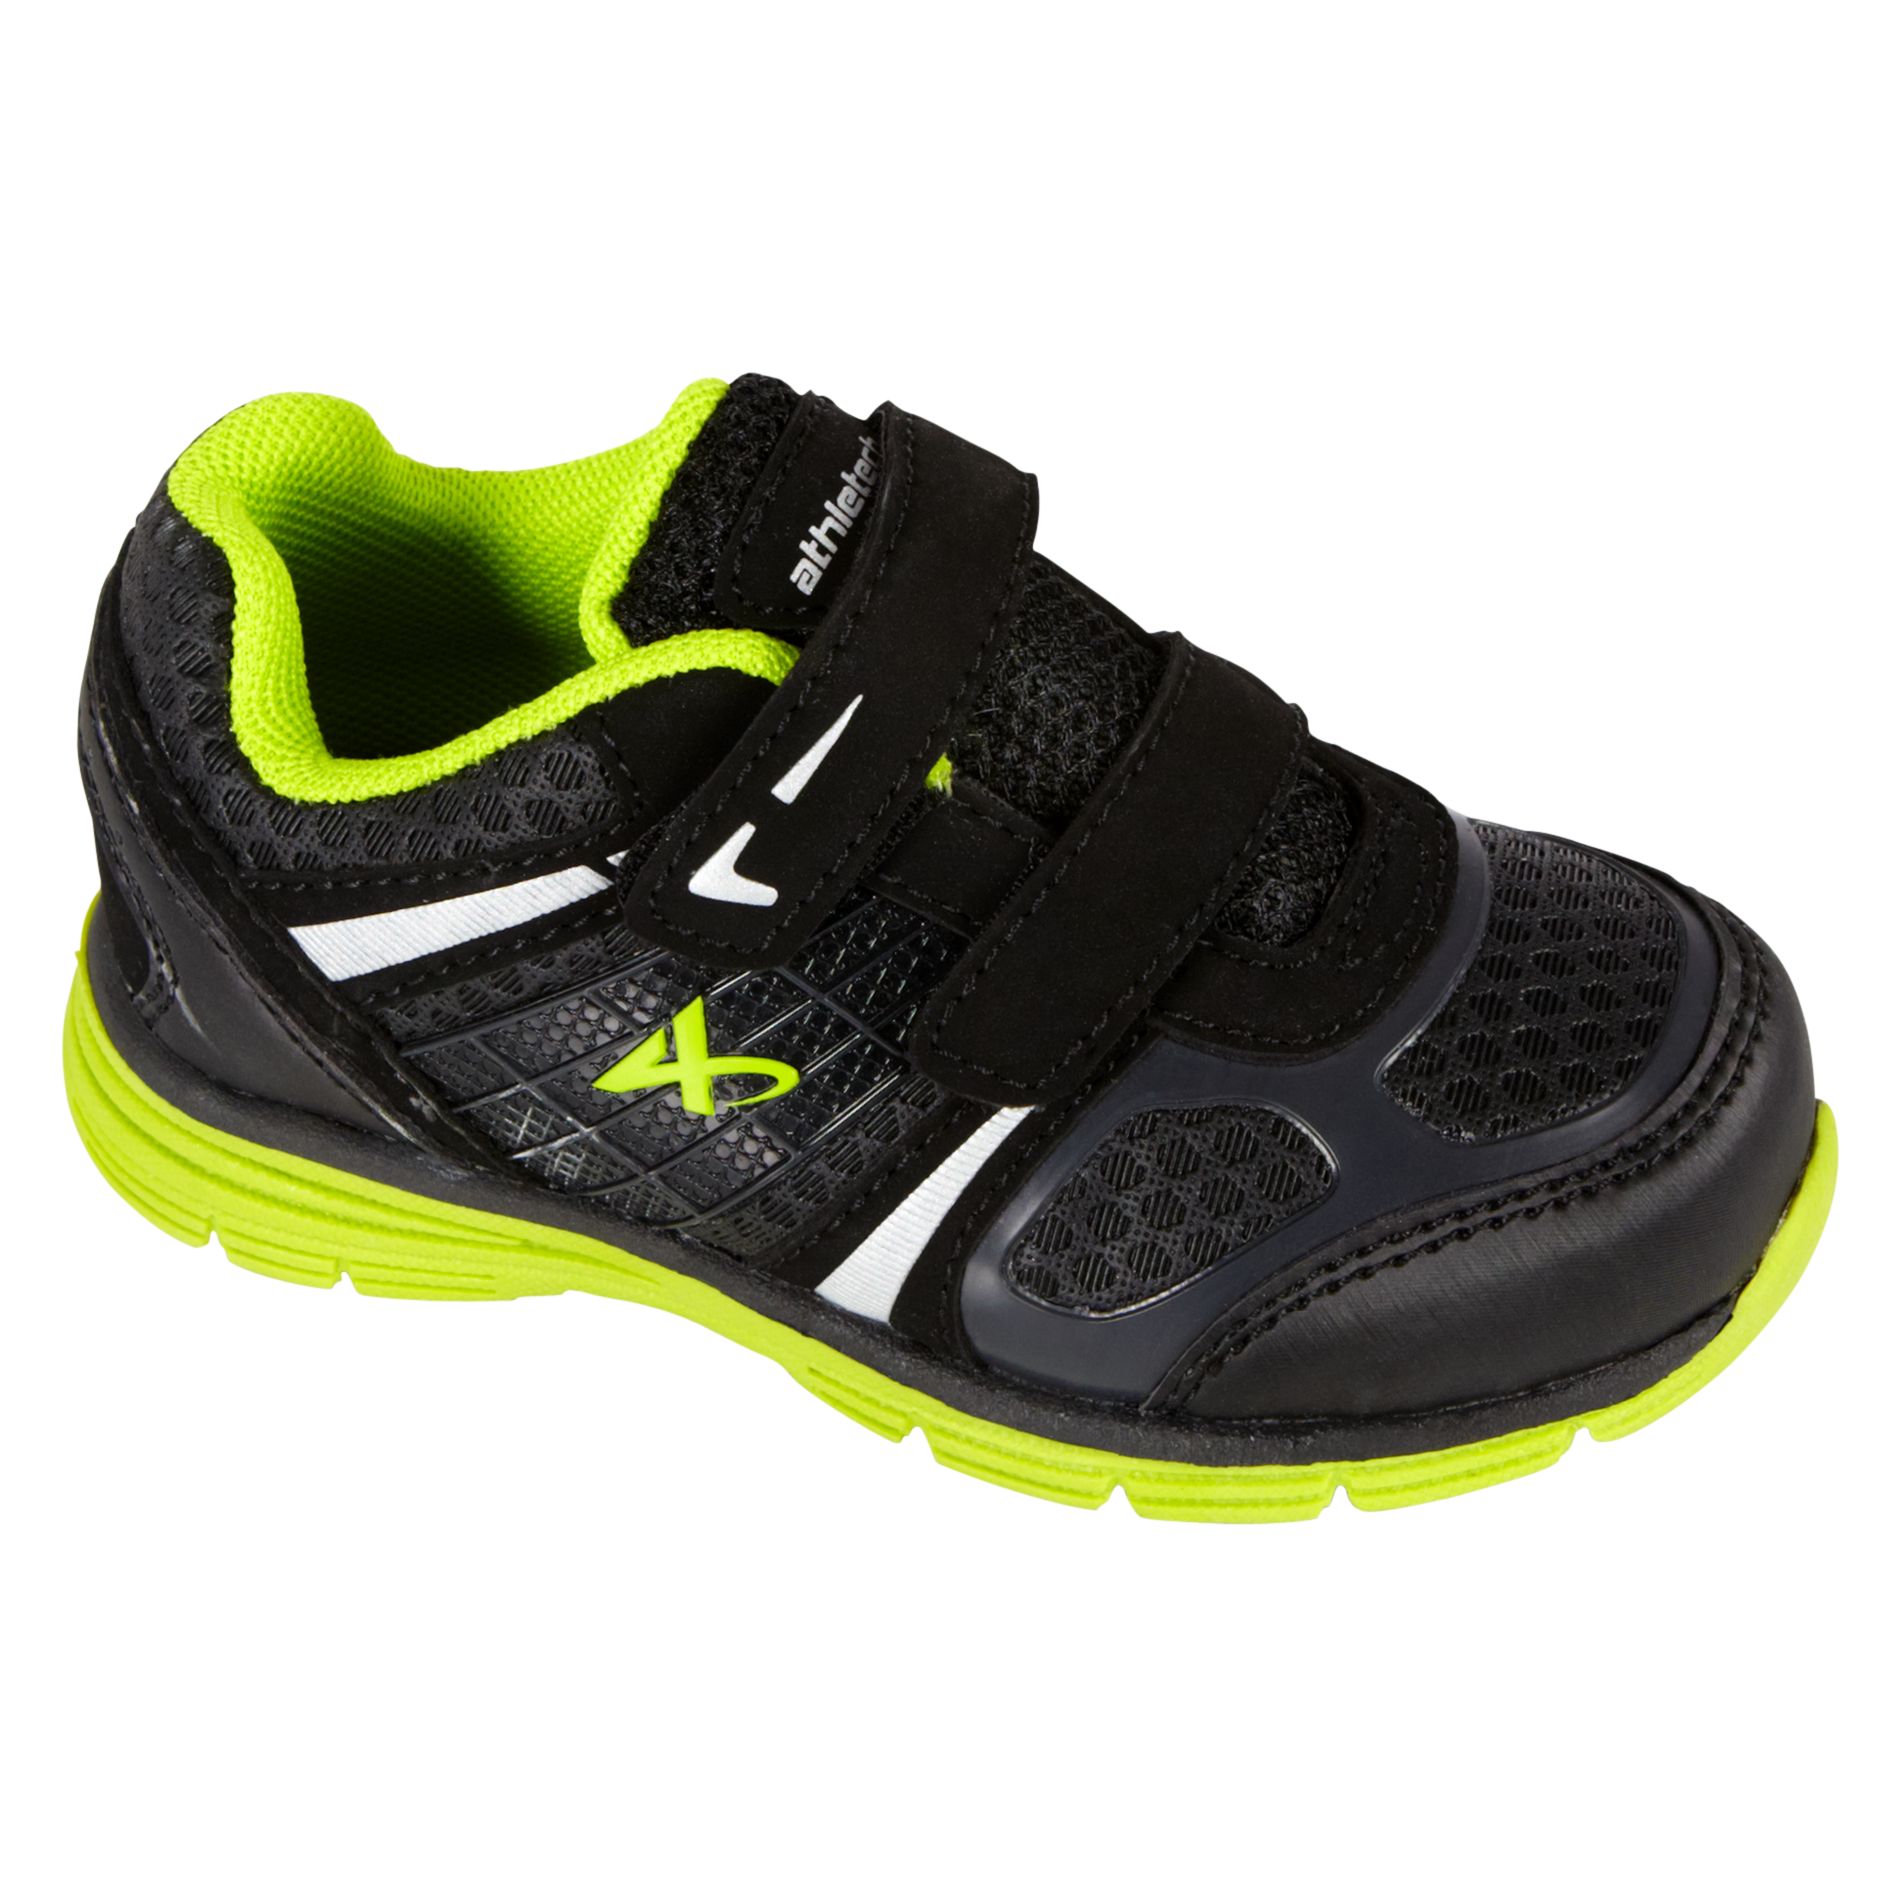 Athletech Toddler Boy's Sneaker Ath L-Hawk 2 - Black/Lime